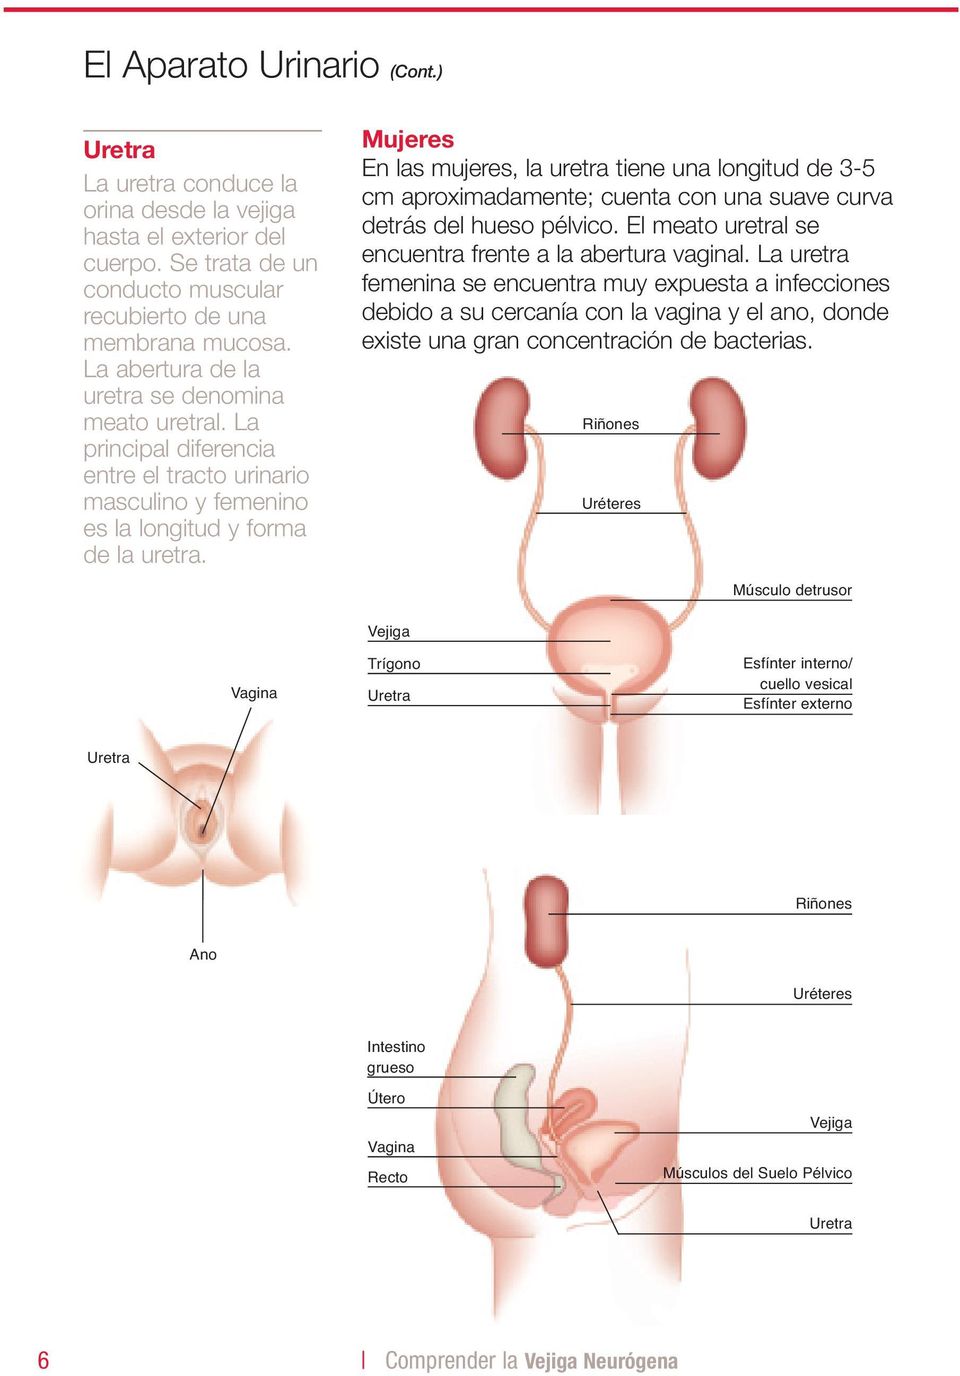 Mujeres En las mujeres, la uretra tiene una longitud de 3-5 cm aproximadamente; cuenta con una suave curva detrás del hueso pélvico. El meato uretral se encuentra frente a la abertura vaginal.